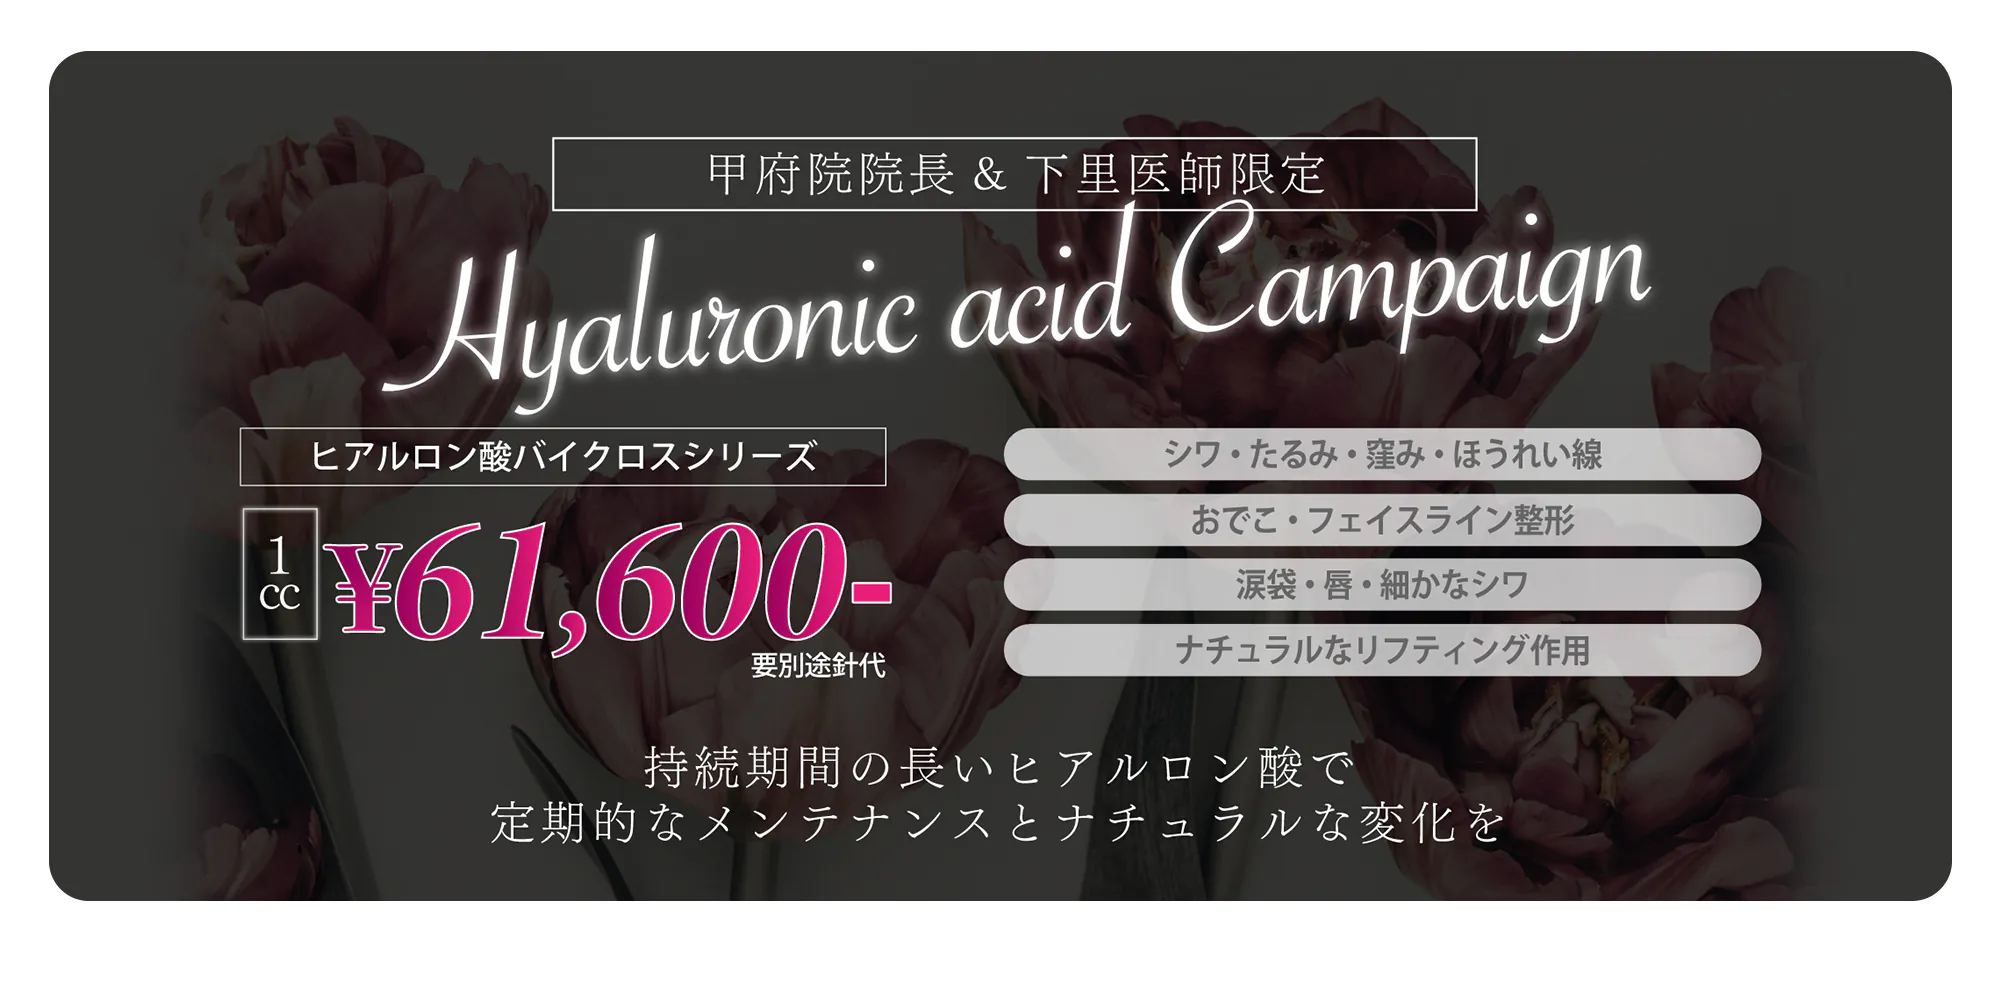 甲府院院長 & 下里医師限定キャンペーン ヒアルロン酸バイクロスシリーズ 1cc 61,600円